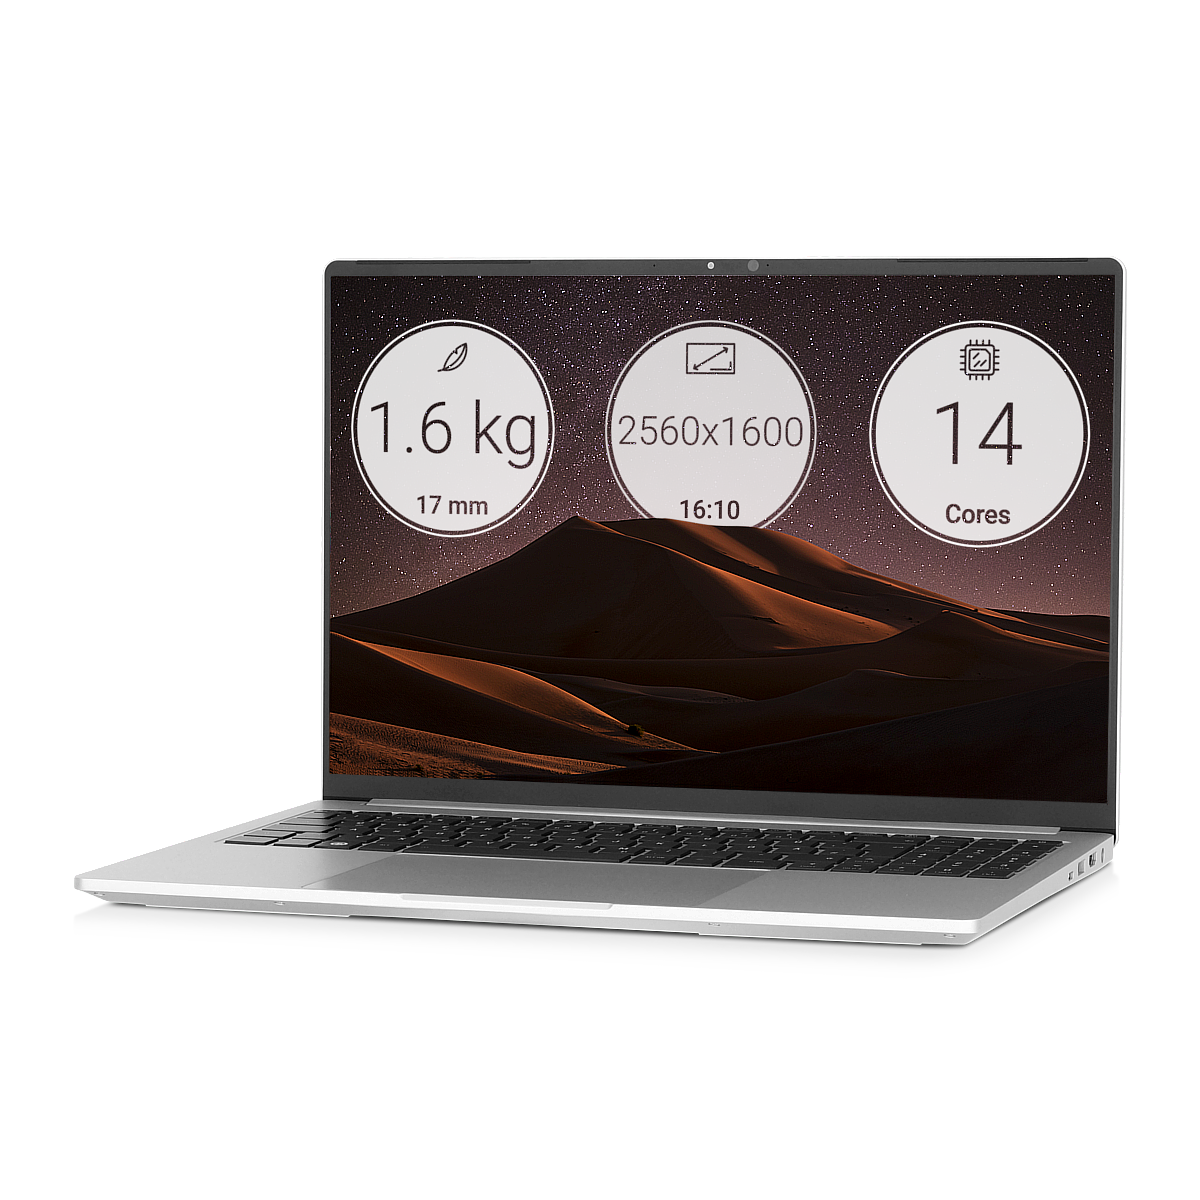 Tuxedo InfinityBook Pro 16 mit Spezifikationen: 1.6 kg, 2560x1600 Auflösung und 14 Kernen